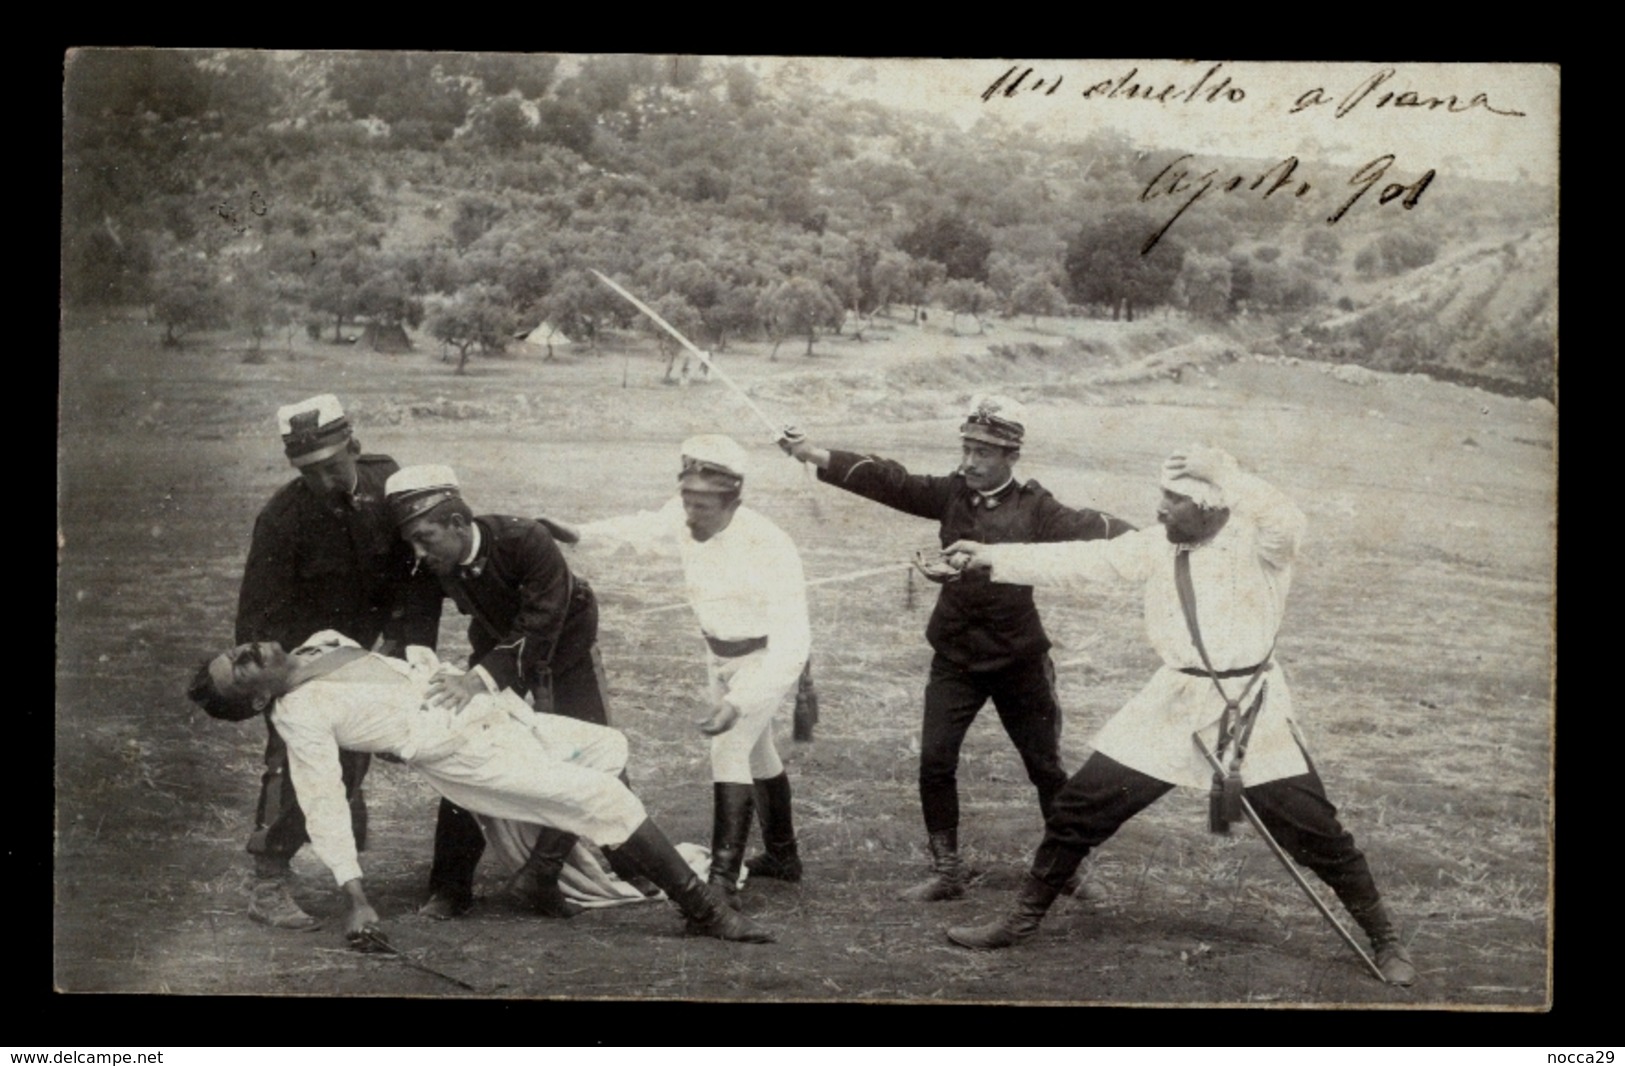 SCHERMA - FOTOCARTOLINA DEL 1901 CON IMMAGINE DI UN DUELLO - UNICA!!! - Fencing